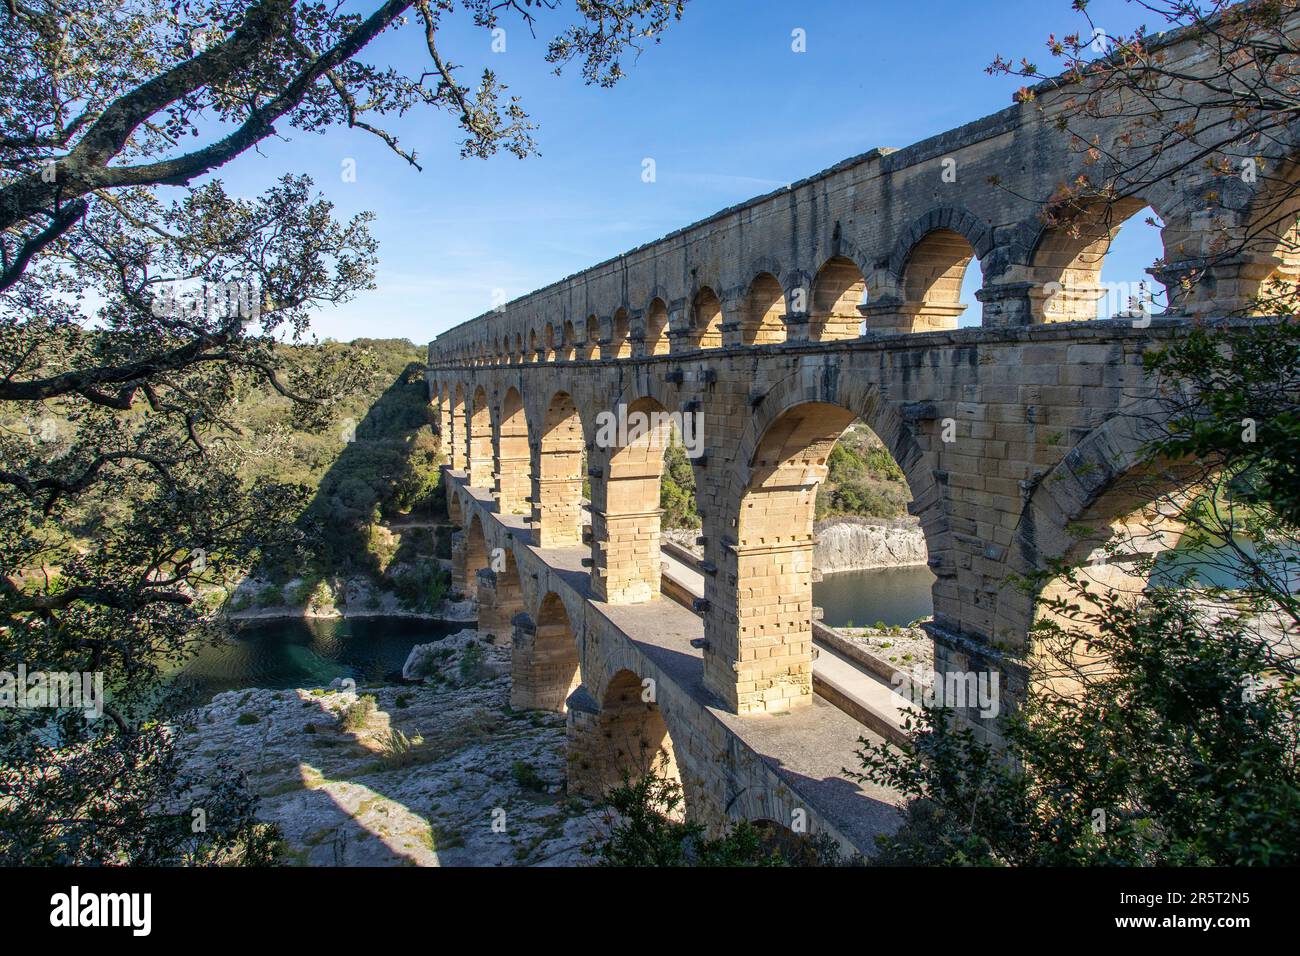 Frankreich, Gard, Vers-Pont-du-Gard, der Pont du Gard, der von der UNESCO zum Weltkulturerbe erklärt wurde, große Stätte Frankreichs, römisches Aquädukt aus dem 1. Jahrhundert, das über den Gardon ragt Stockfoto